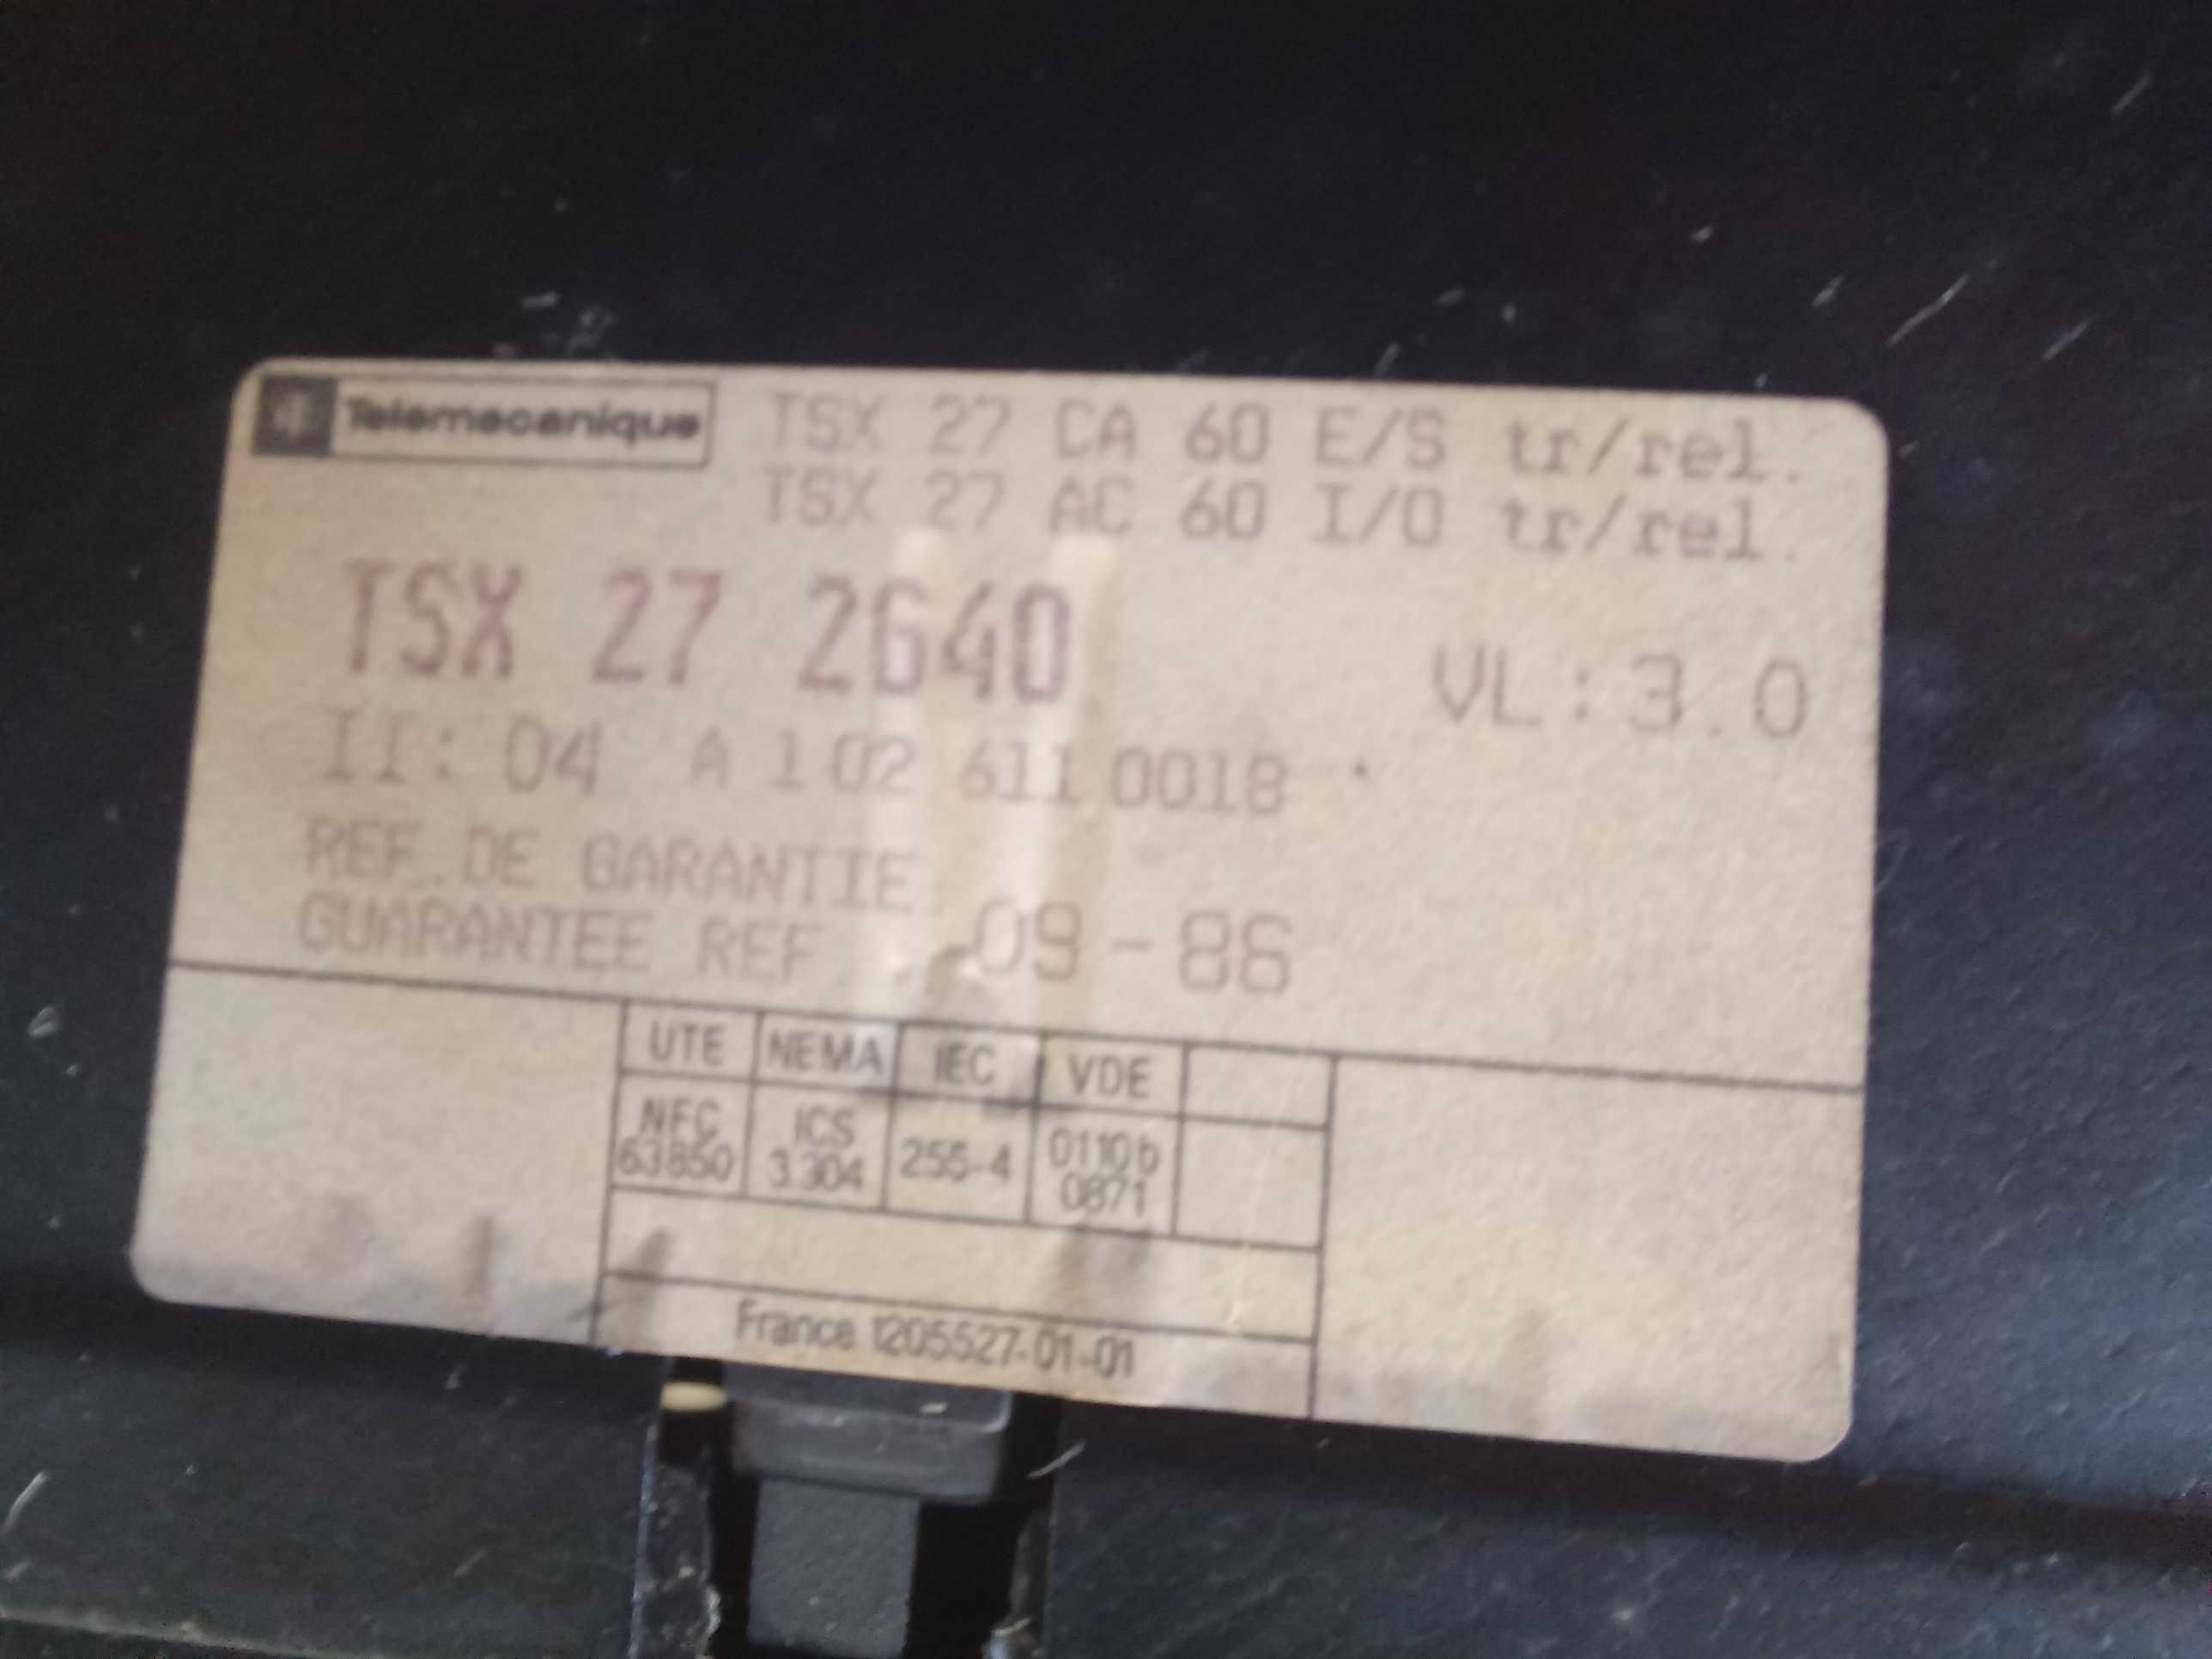 Autómato Telemecanique TSX 2720